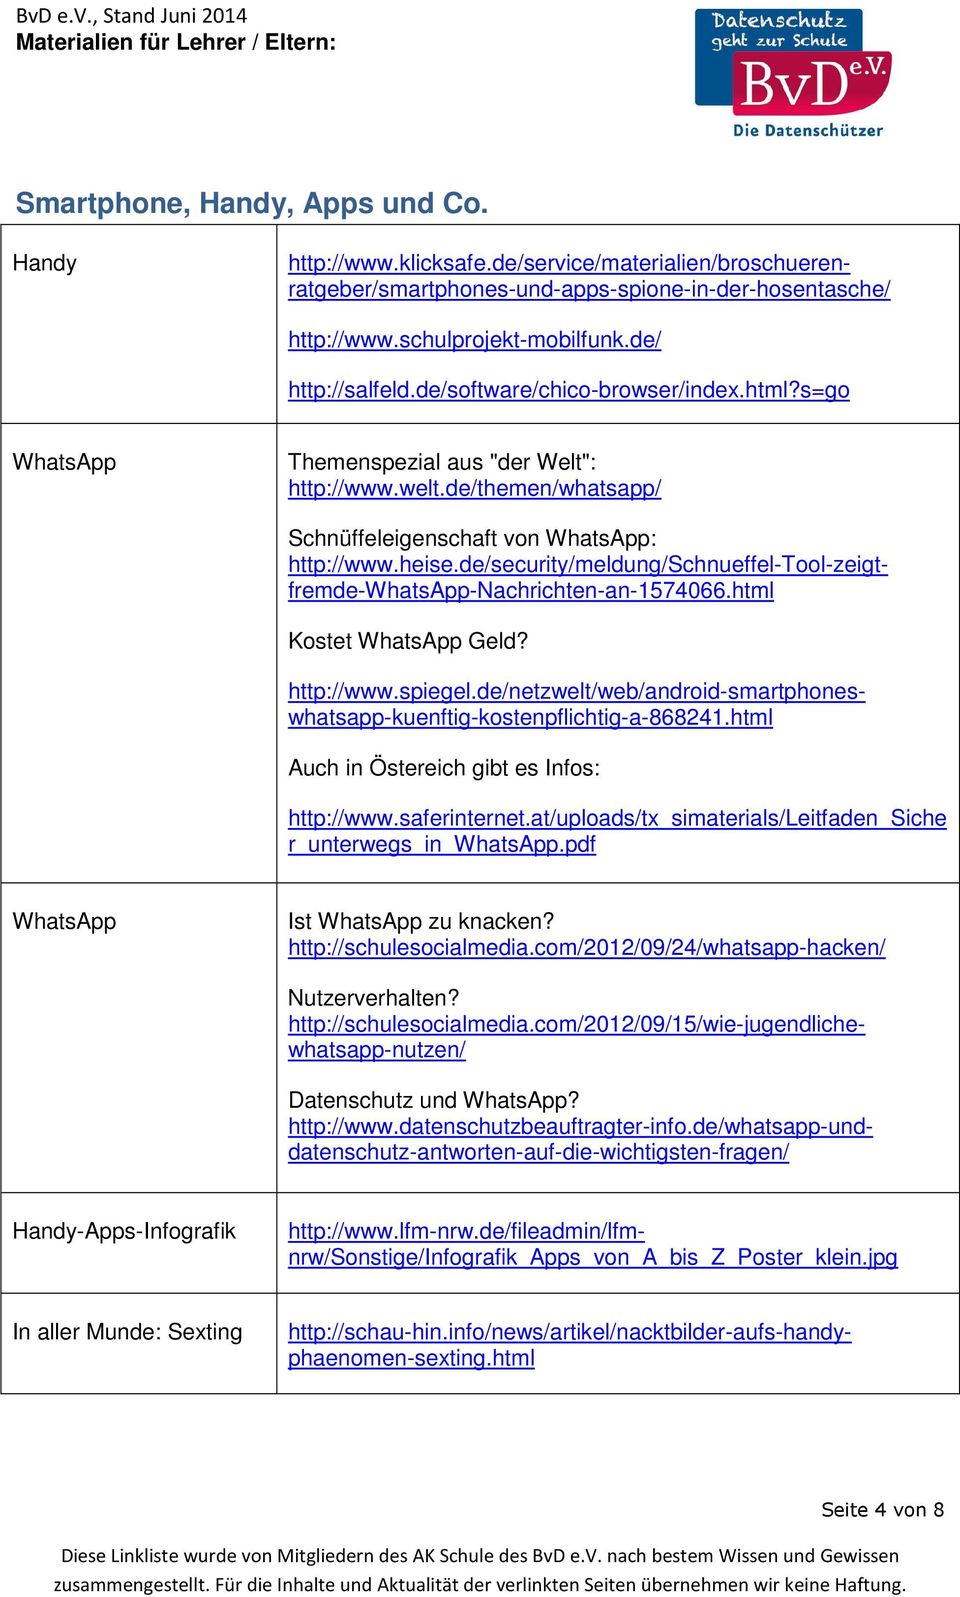 Schnüffeleigenschaft von WhatsApp: http://www.heise.de/security/meldung/schnueffel-tool-zeigtfremde-whatsapp-nachrichten-an-1574066.html http://www.spiegel.